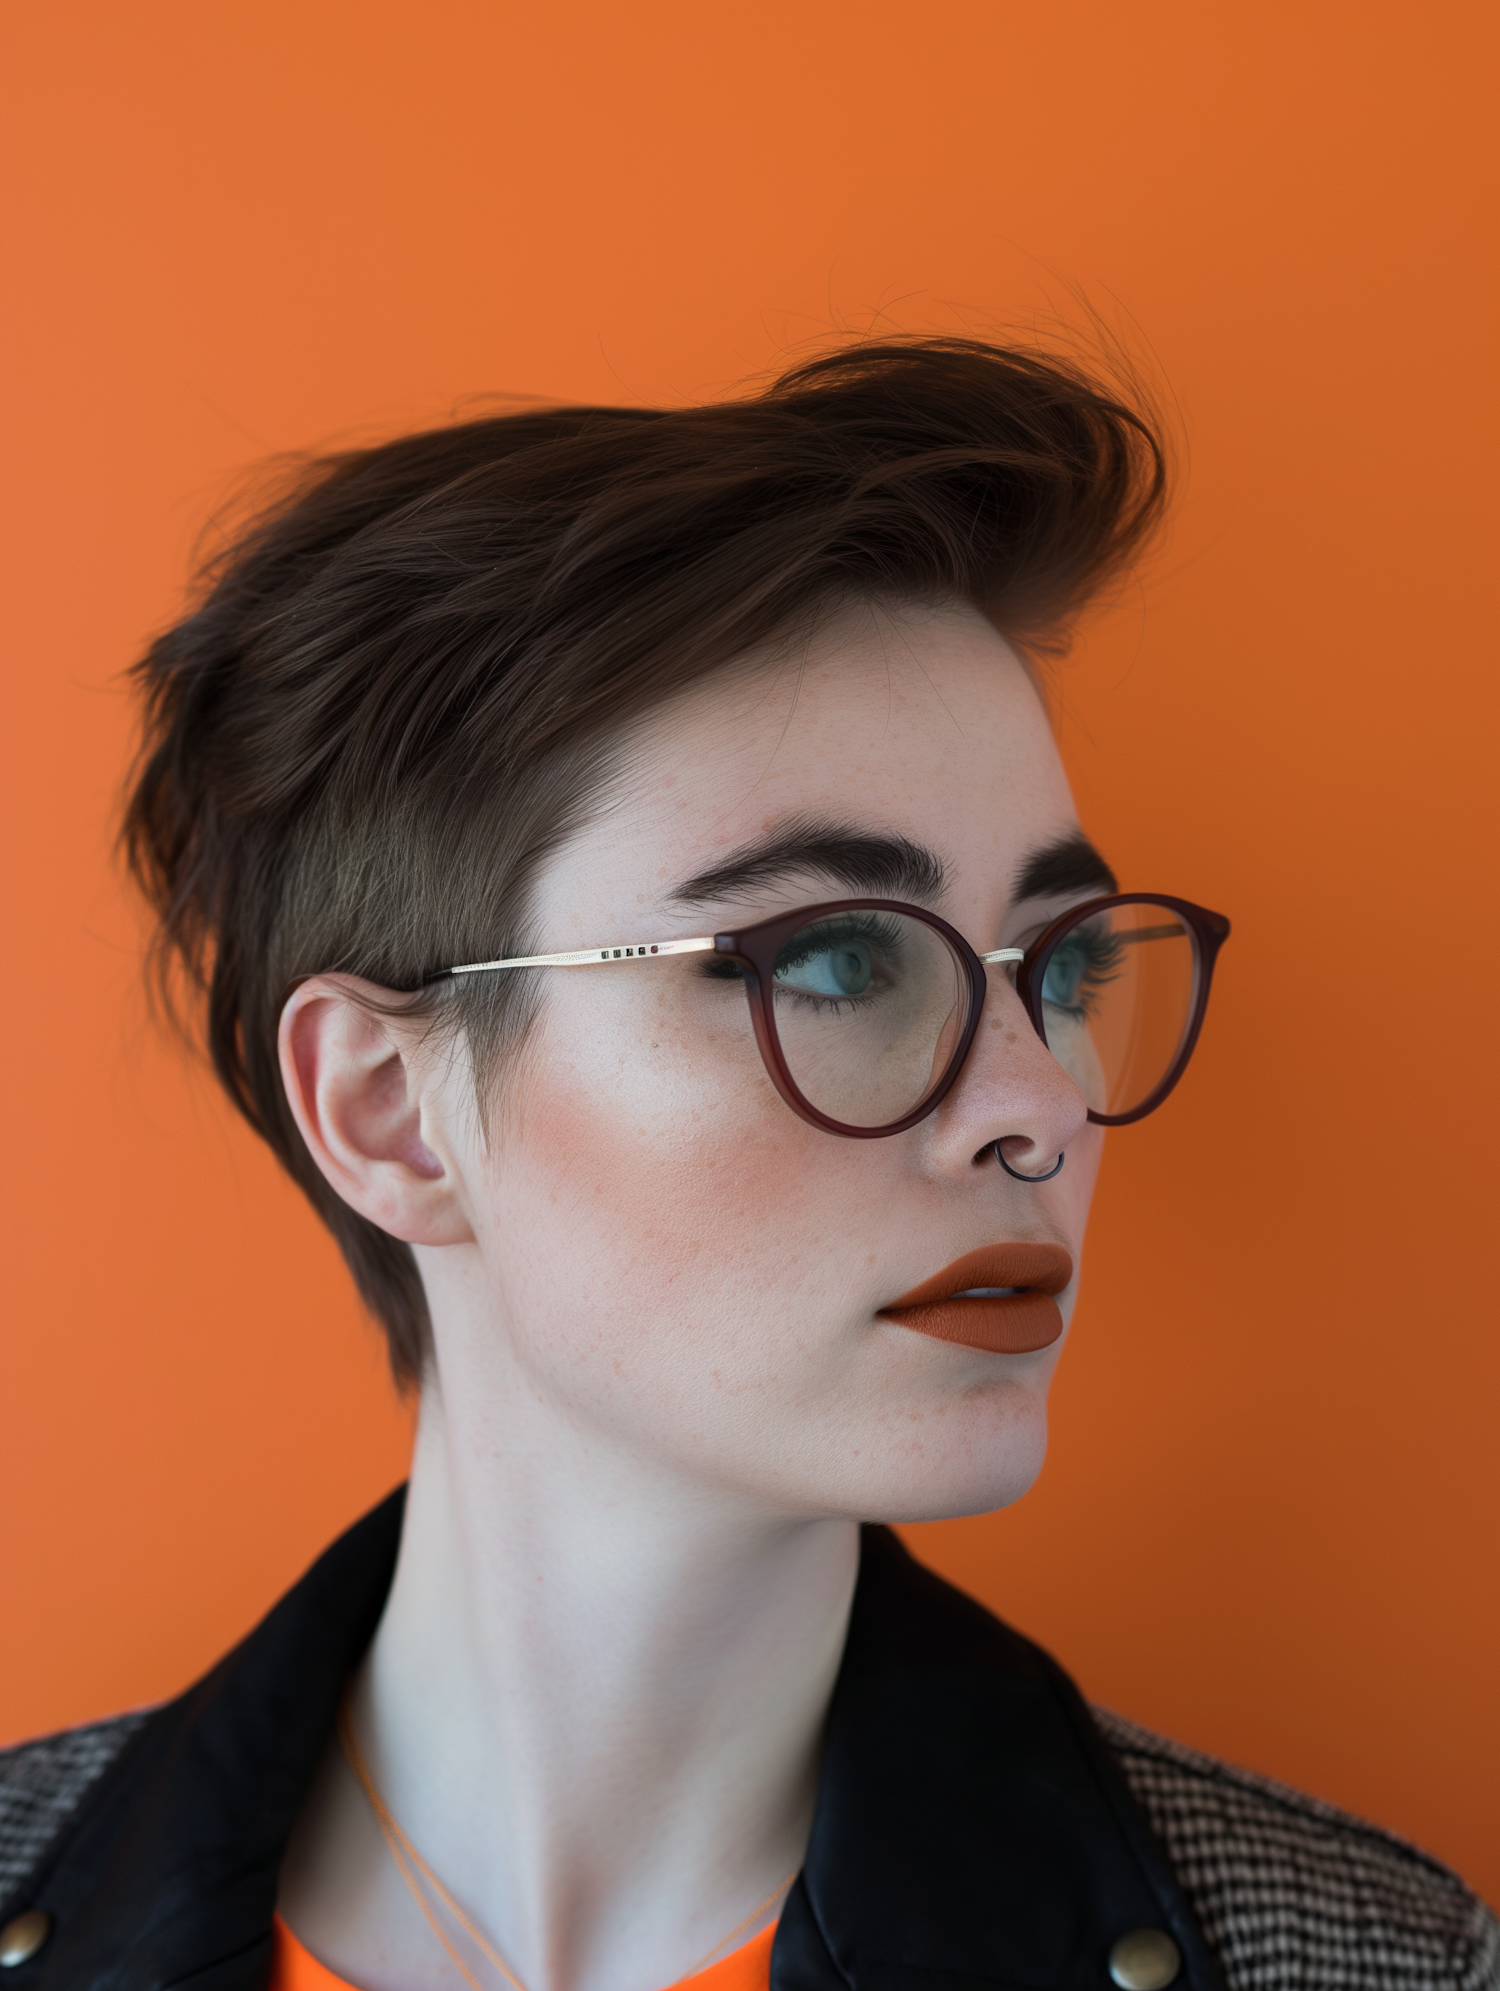 Stylish Profile Portrait with Orange Backdrop